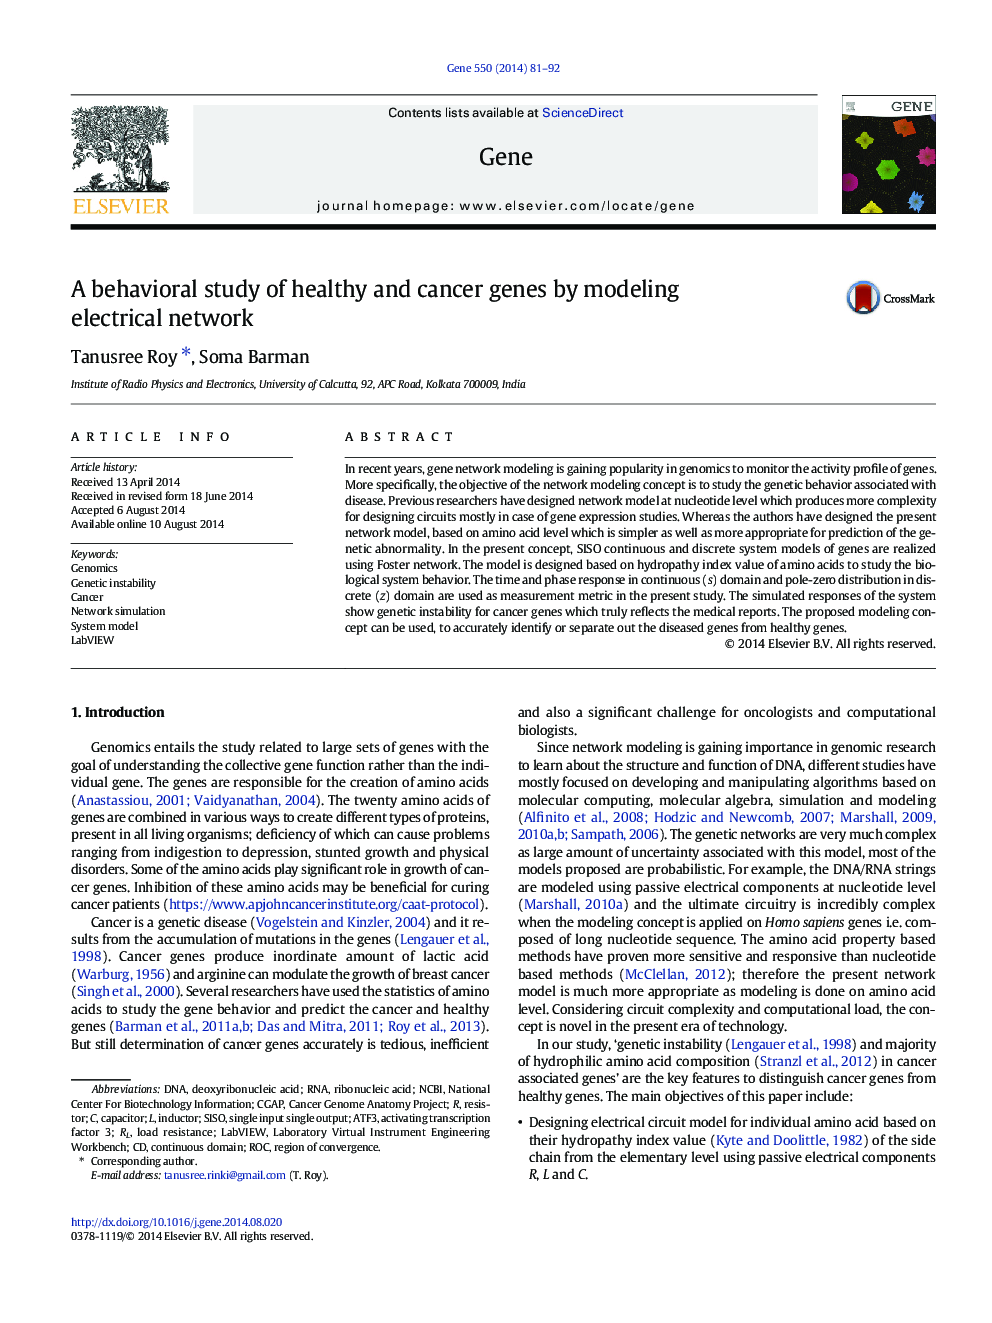 مطالعه رفتارهای ژنهای سالم و سرطان با استفاده از مدلسازی شبکه برق 